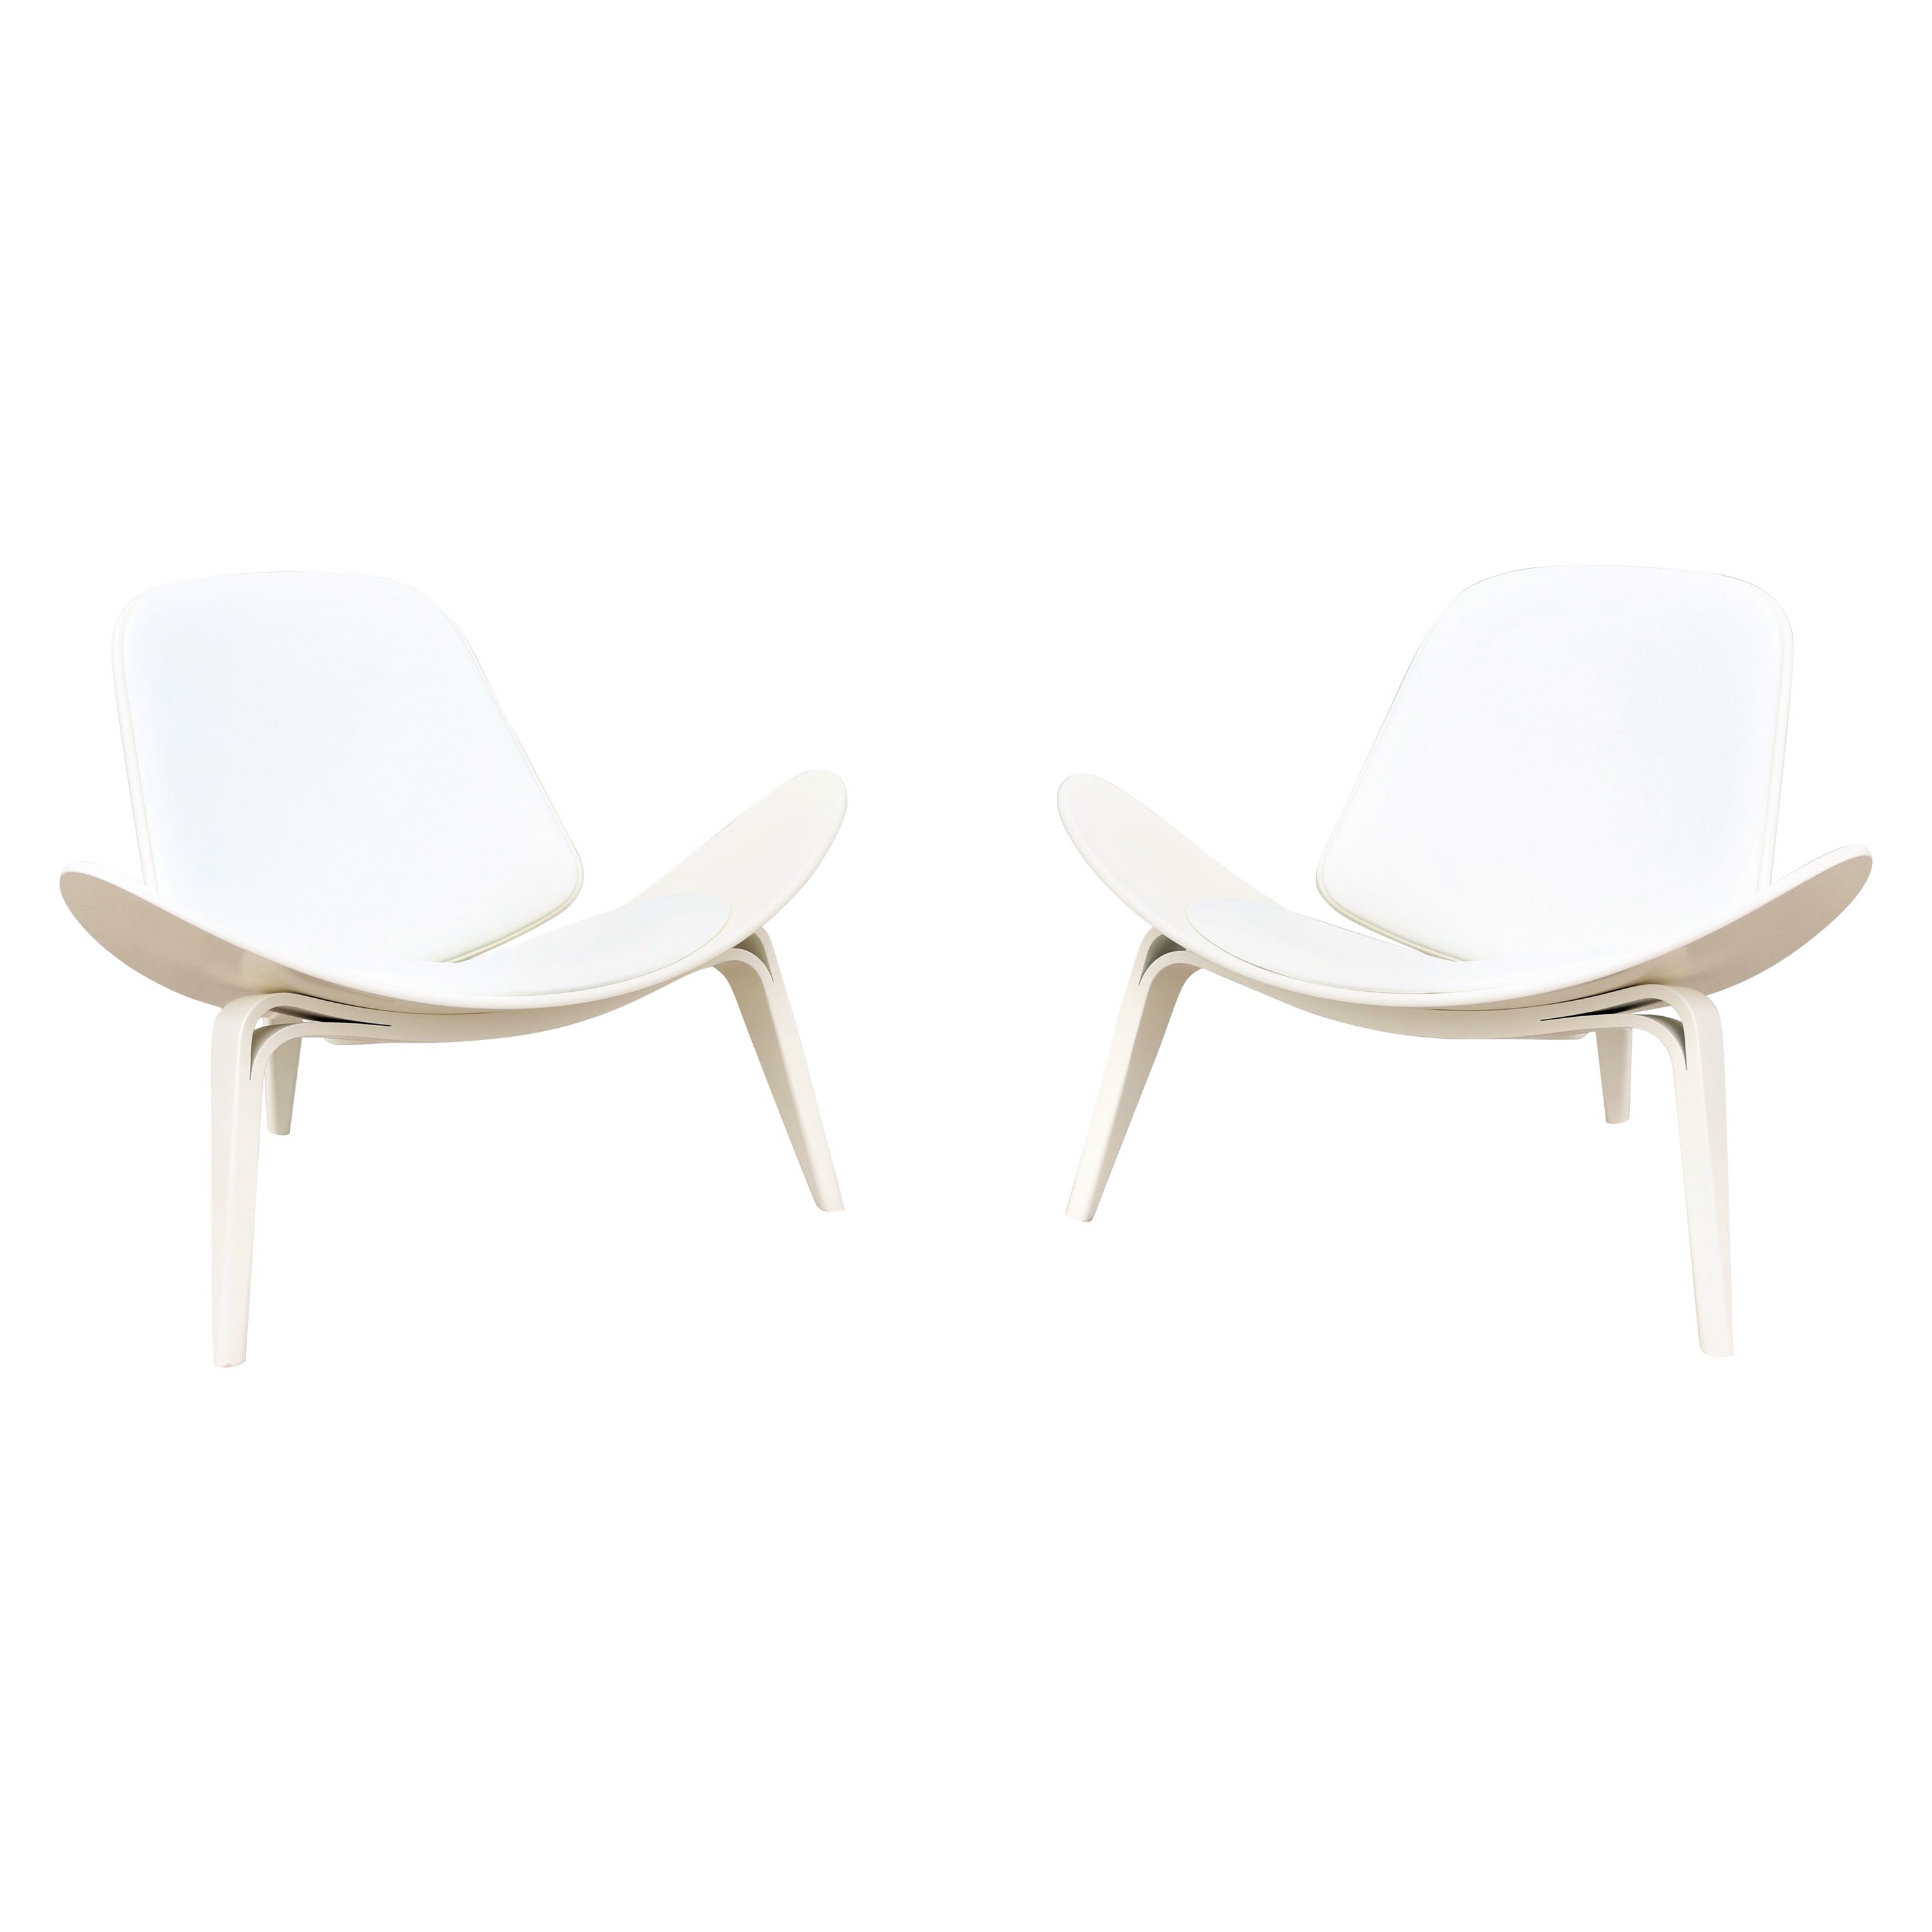 Paire de chaises coquillage CH07 de Hans J. Wegner pour Carl Hansen, de style danois moderne du milieu du siècle dernier en vente